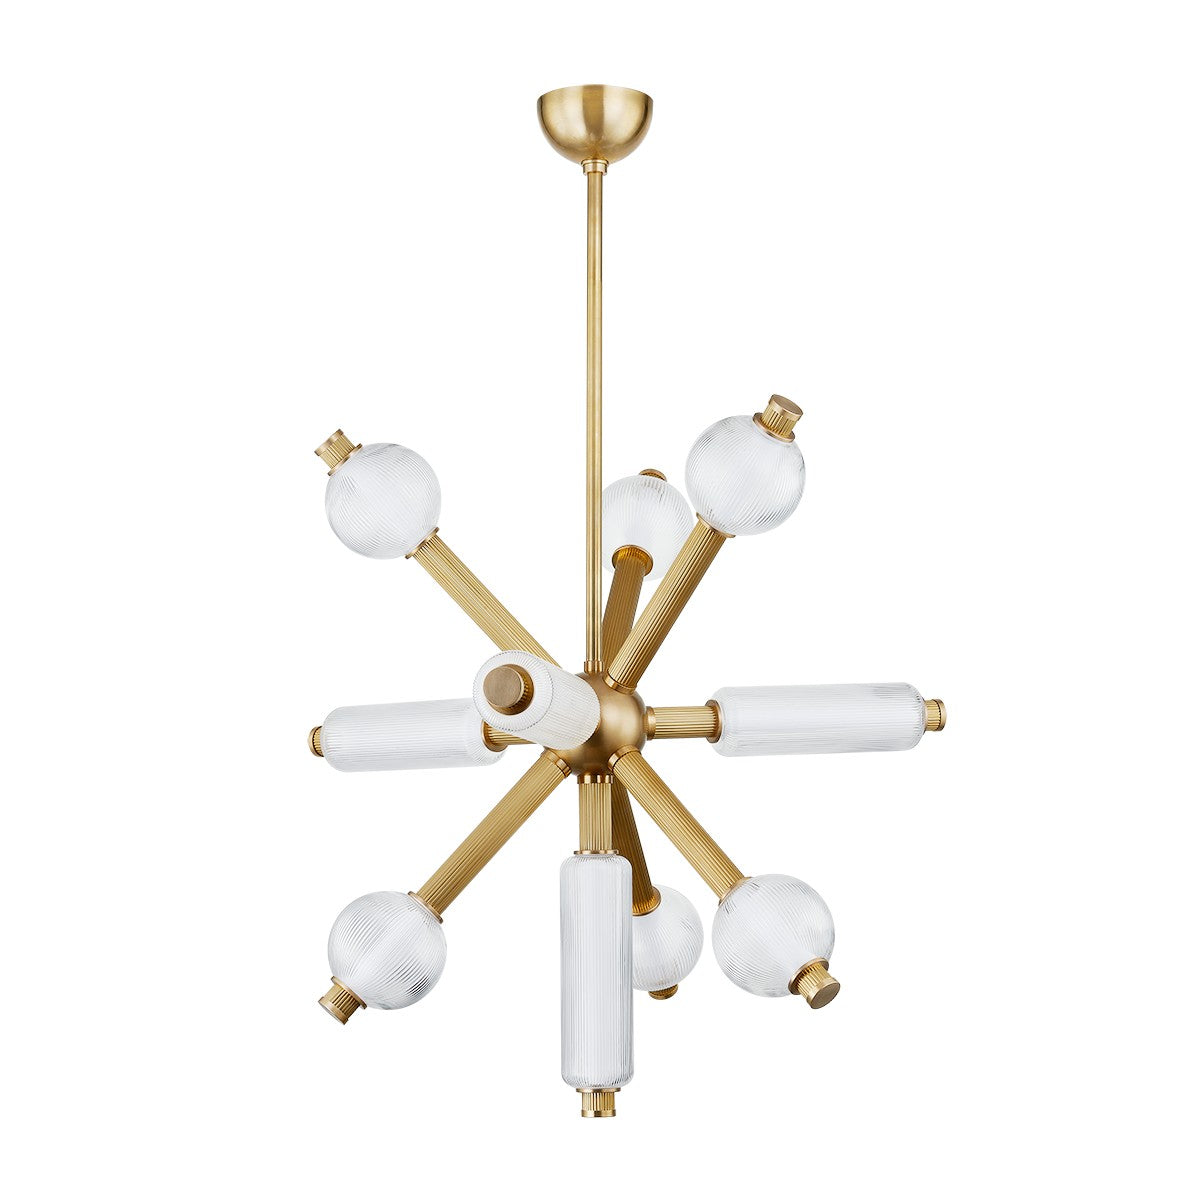 Corbett Lighting - LED Chandelier - Atom - Vintage Brass- Union Lighting Luminaires Decor